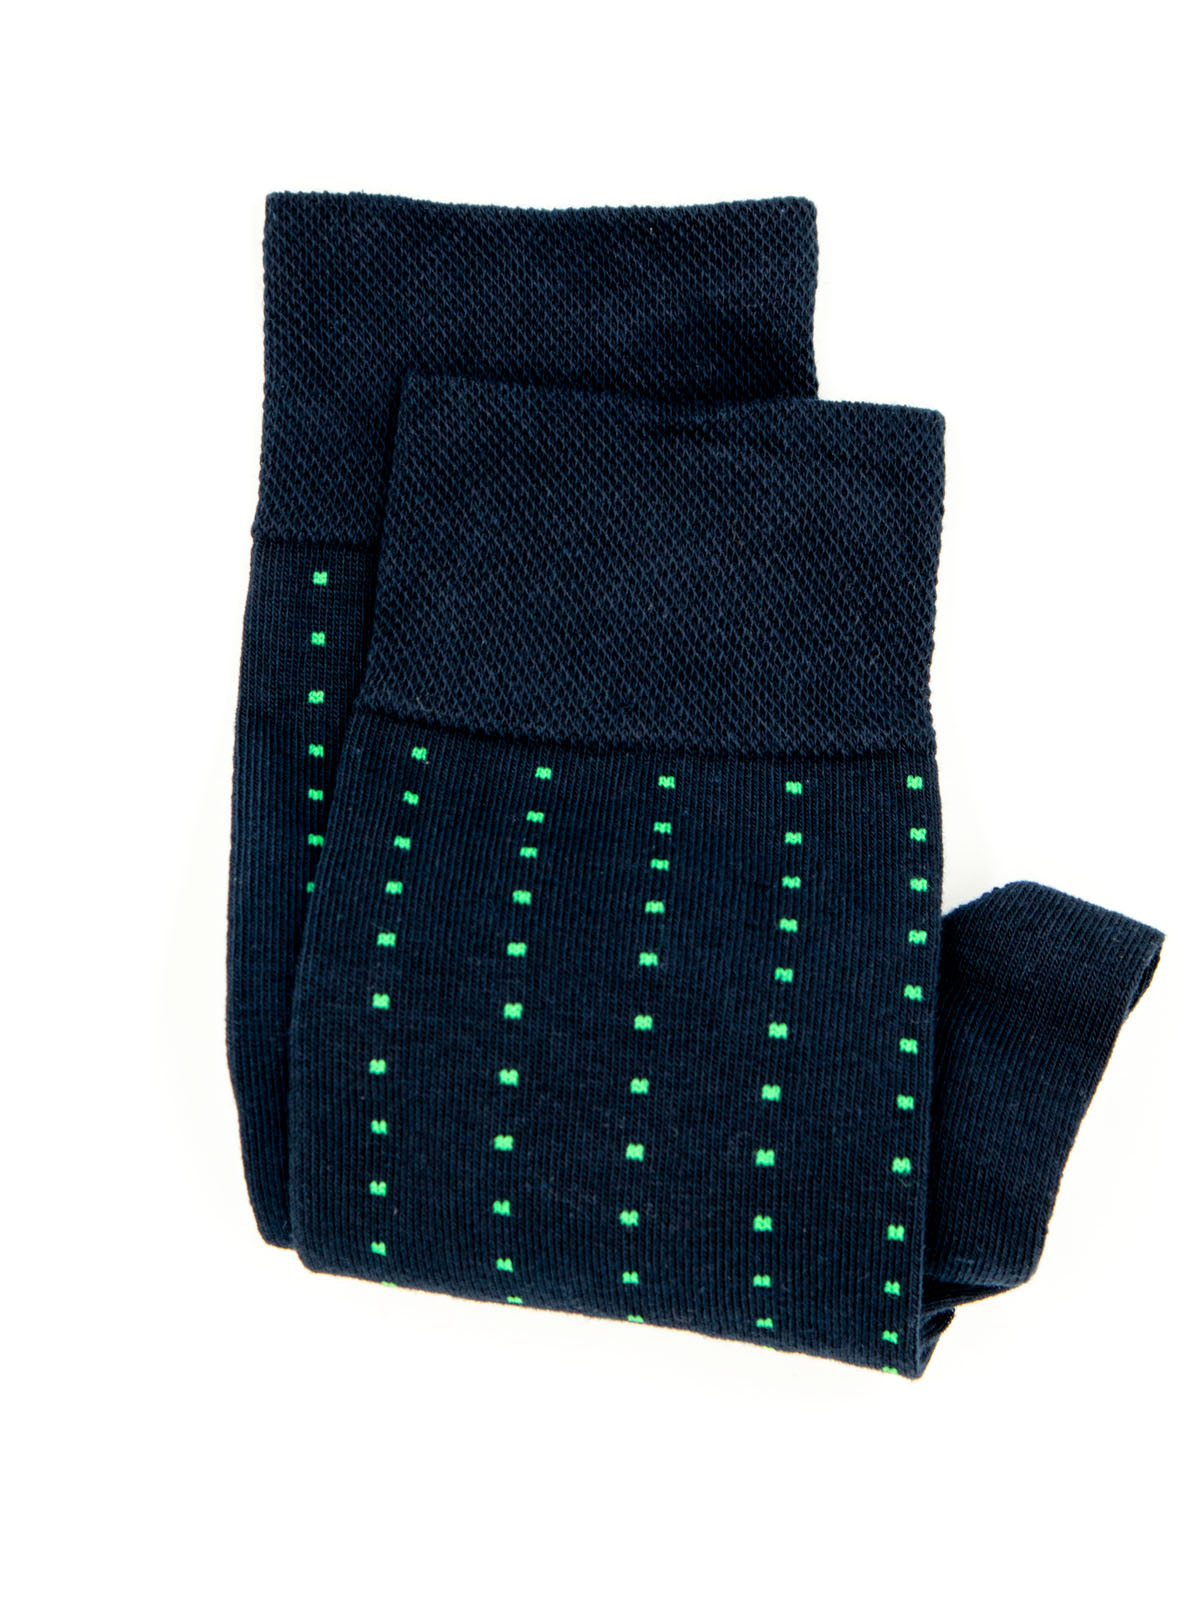 Σκούρο μπλε κάλτσες με πράσινα τετράγων - 10525 - € 3.94 img3